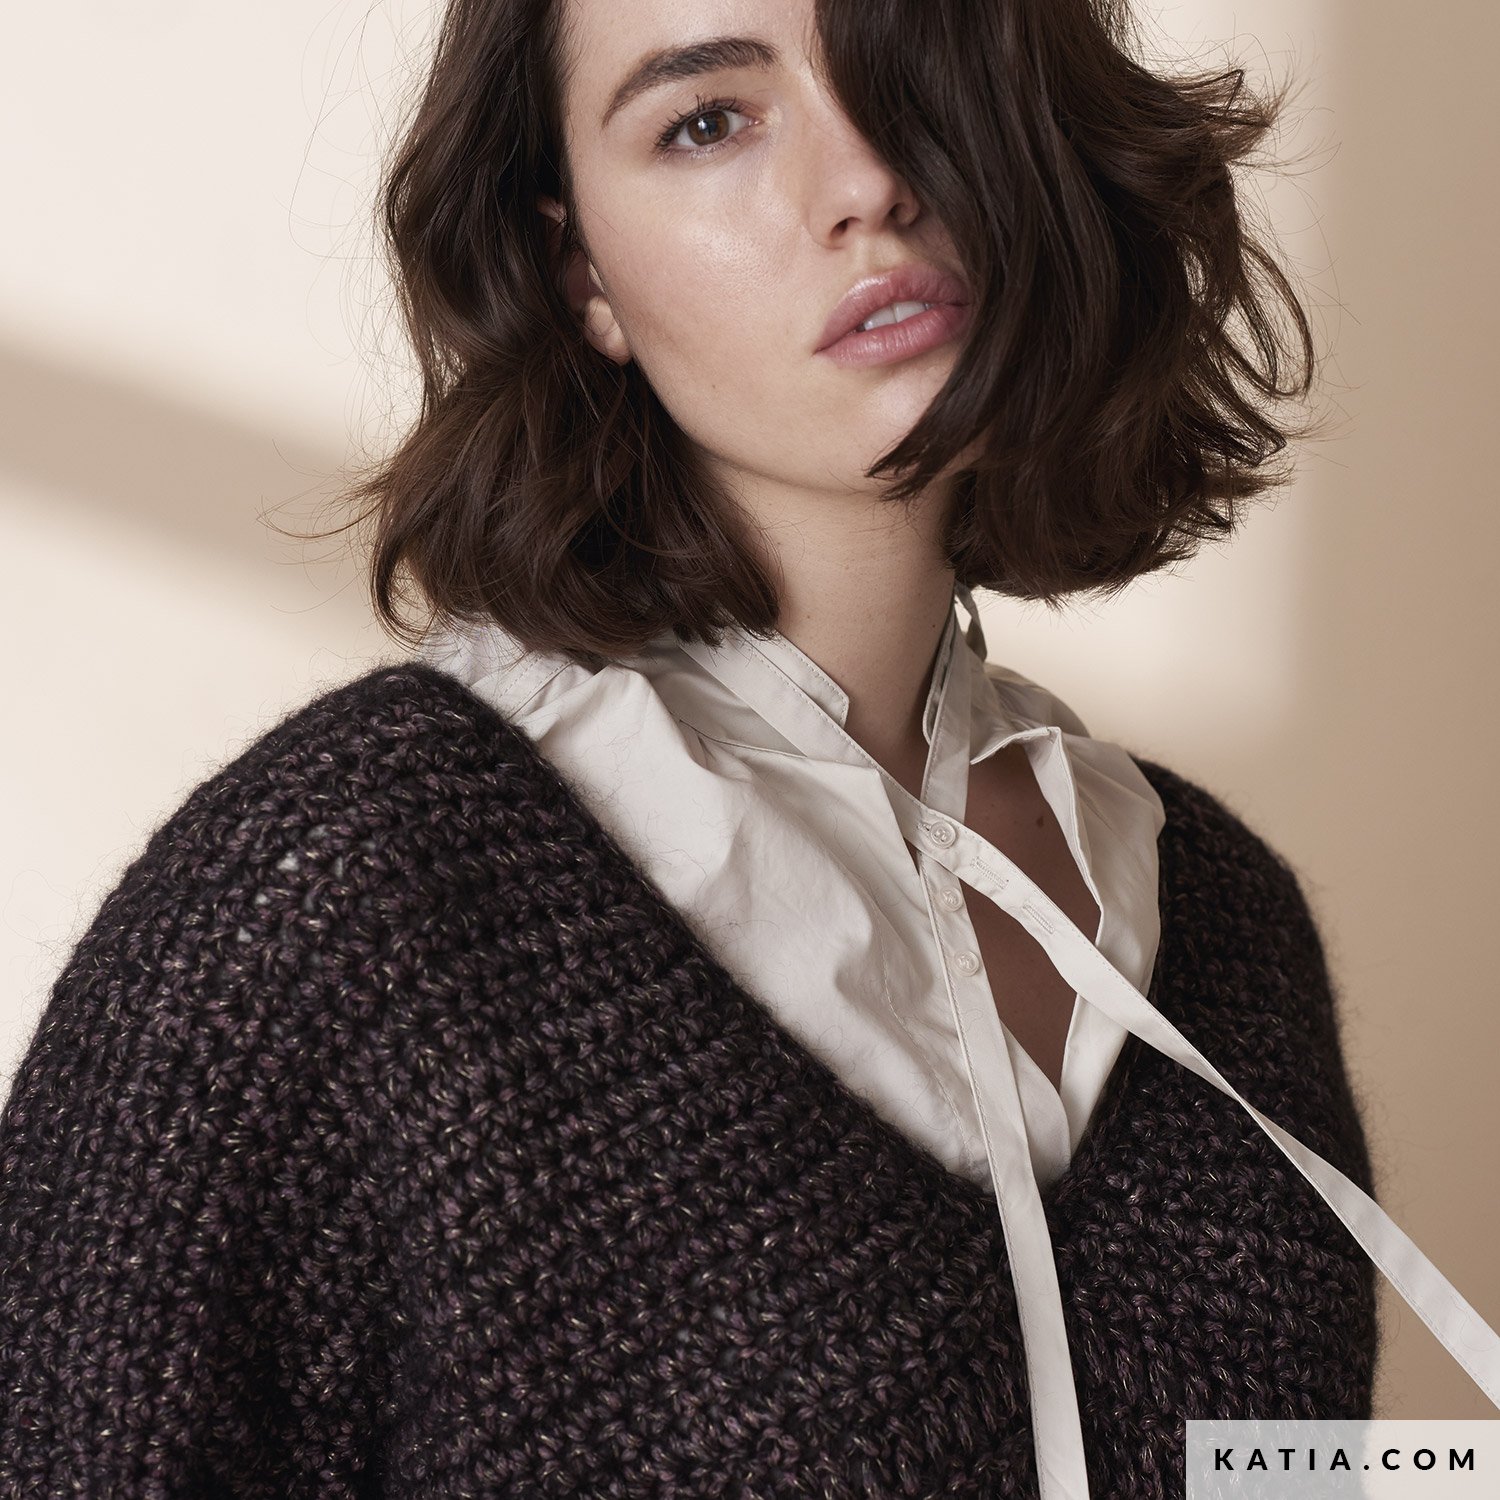 models & patterns | Katia.com